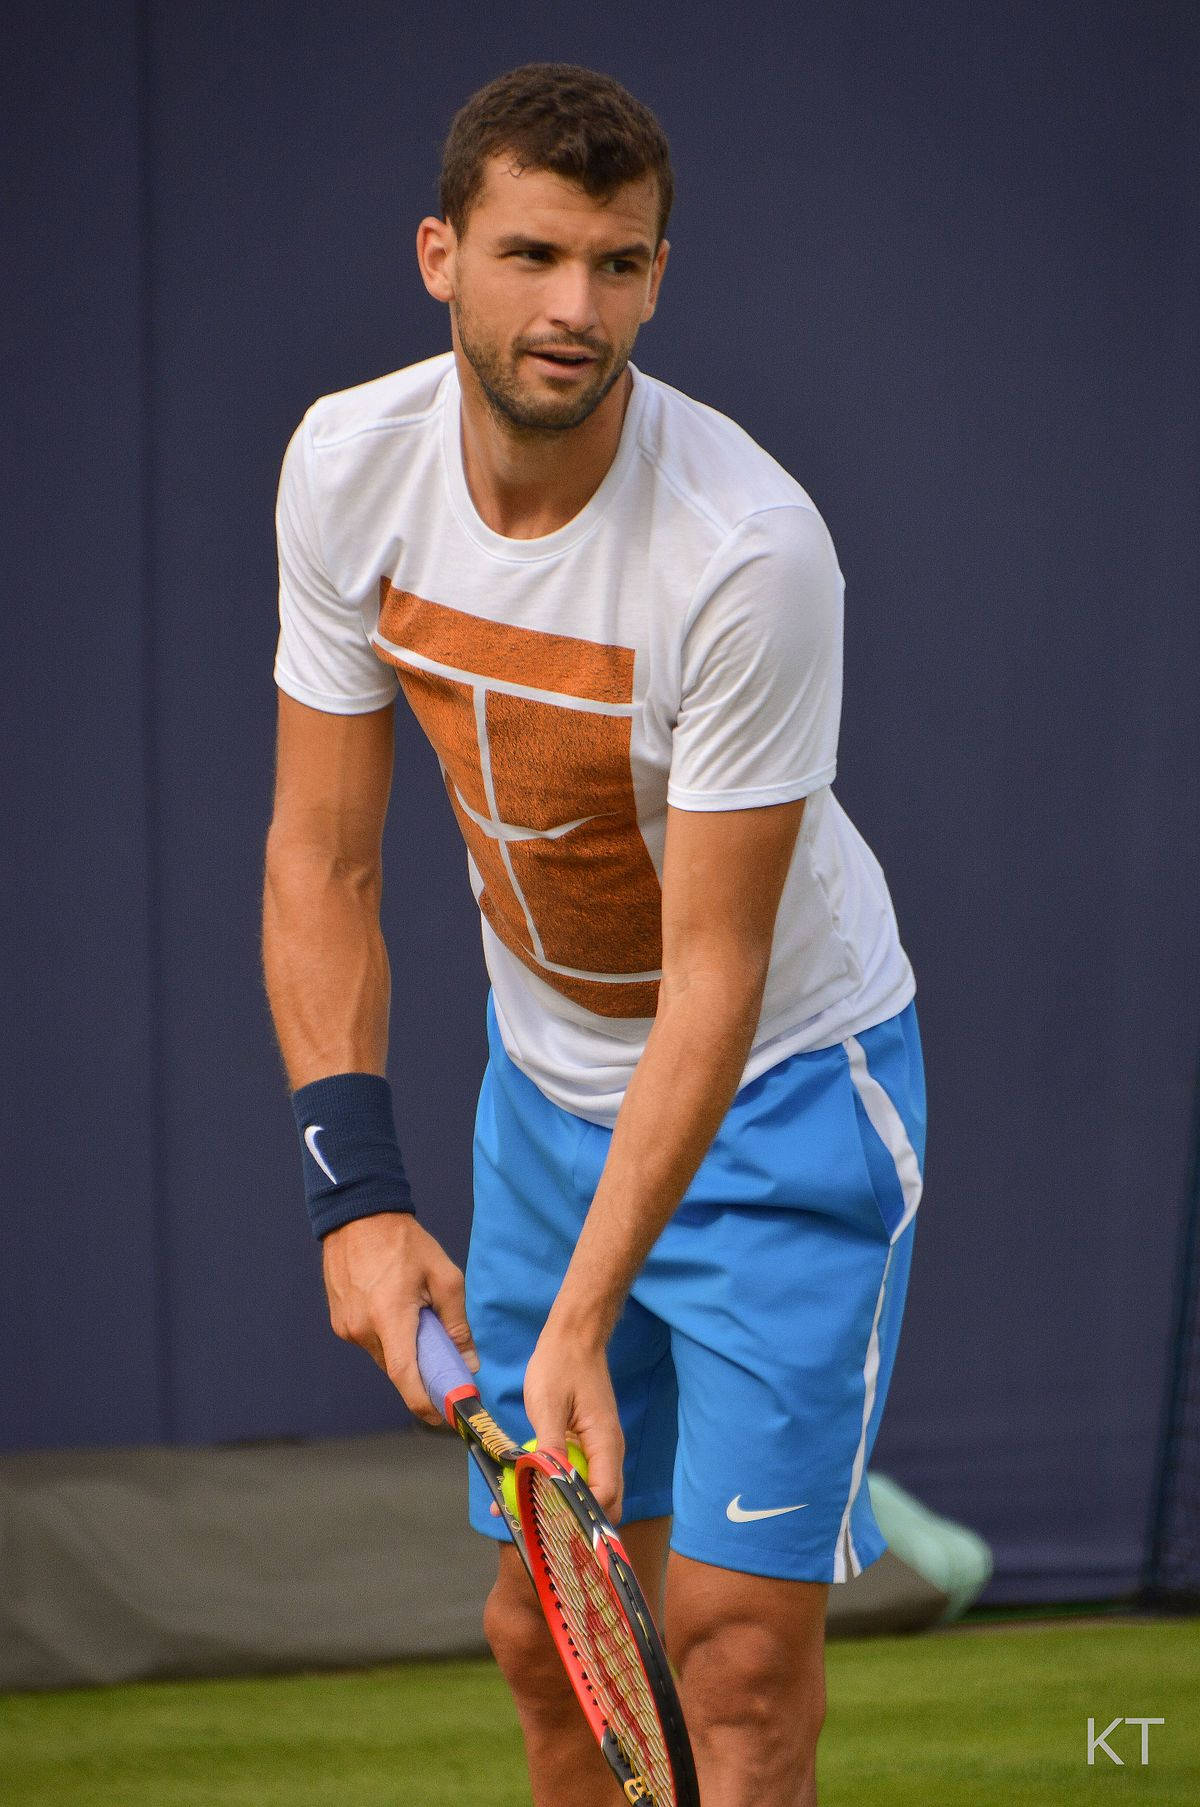 Grigordimitrov Em Uma Camiseta De Tênis Impressa. Papel de Parede